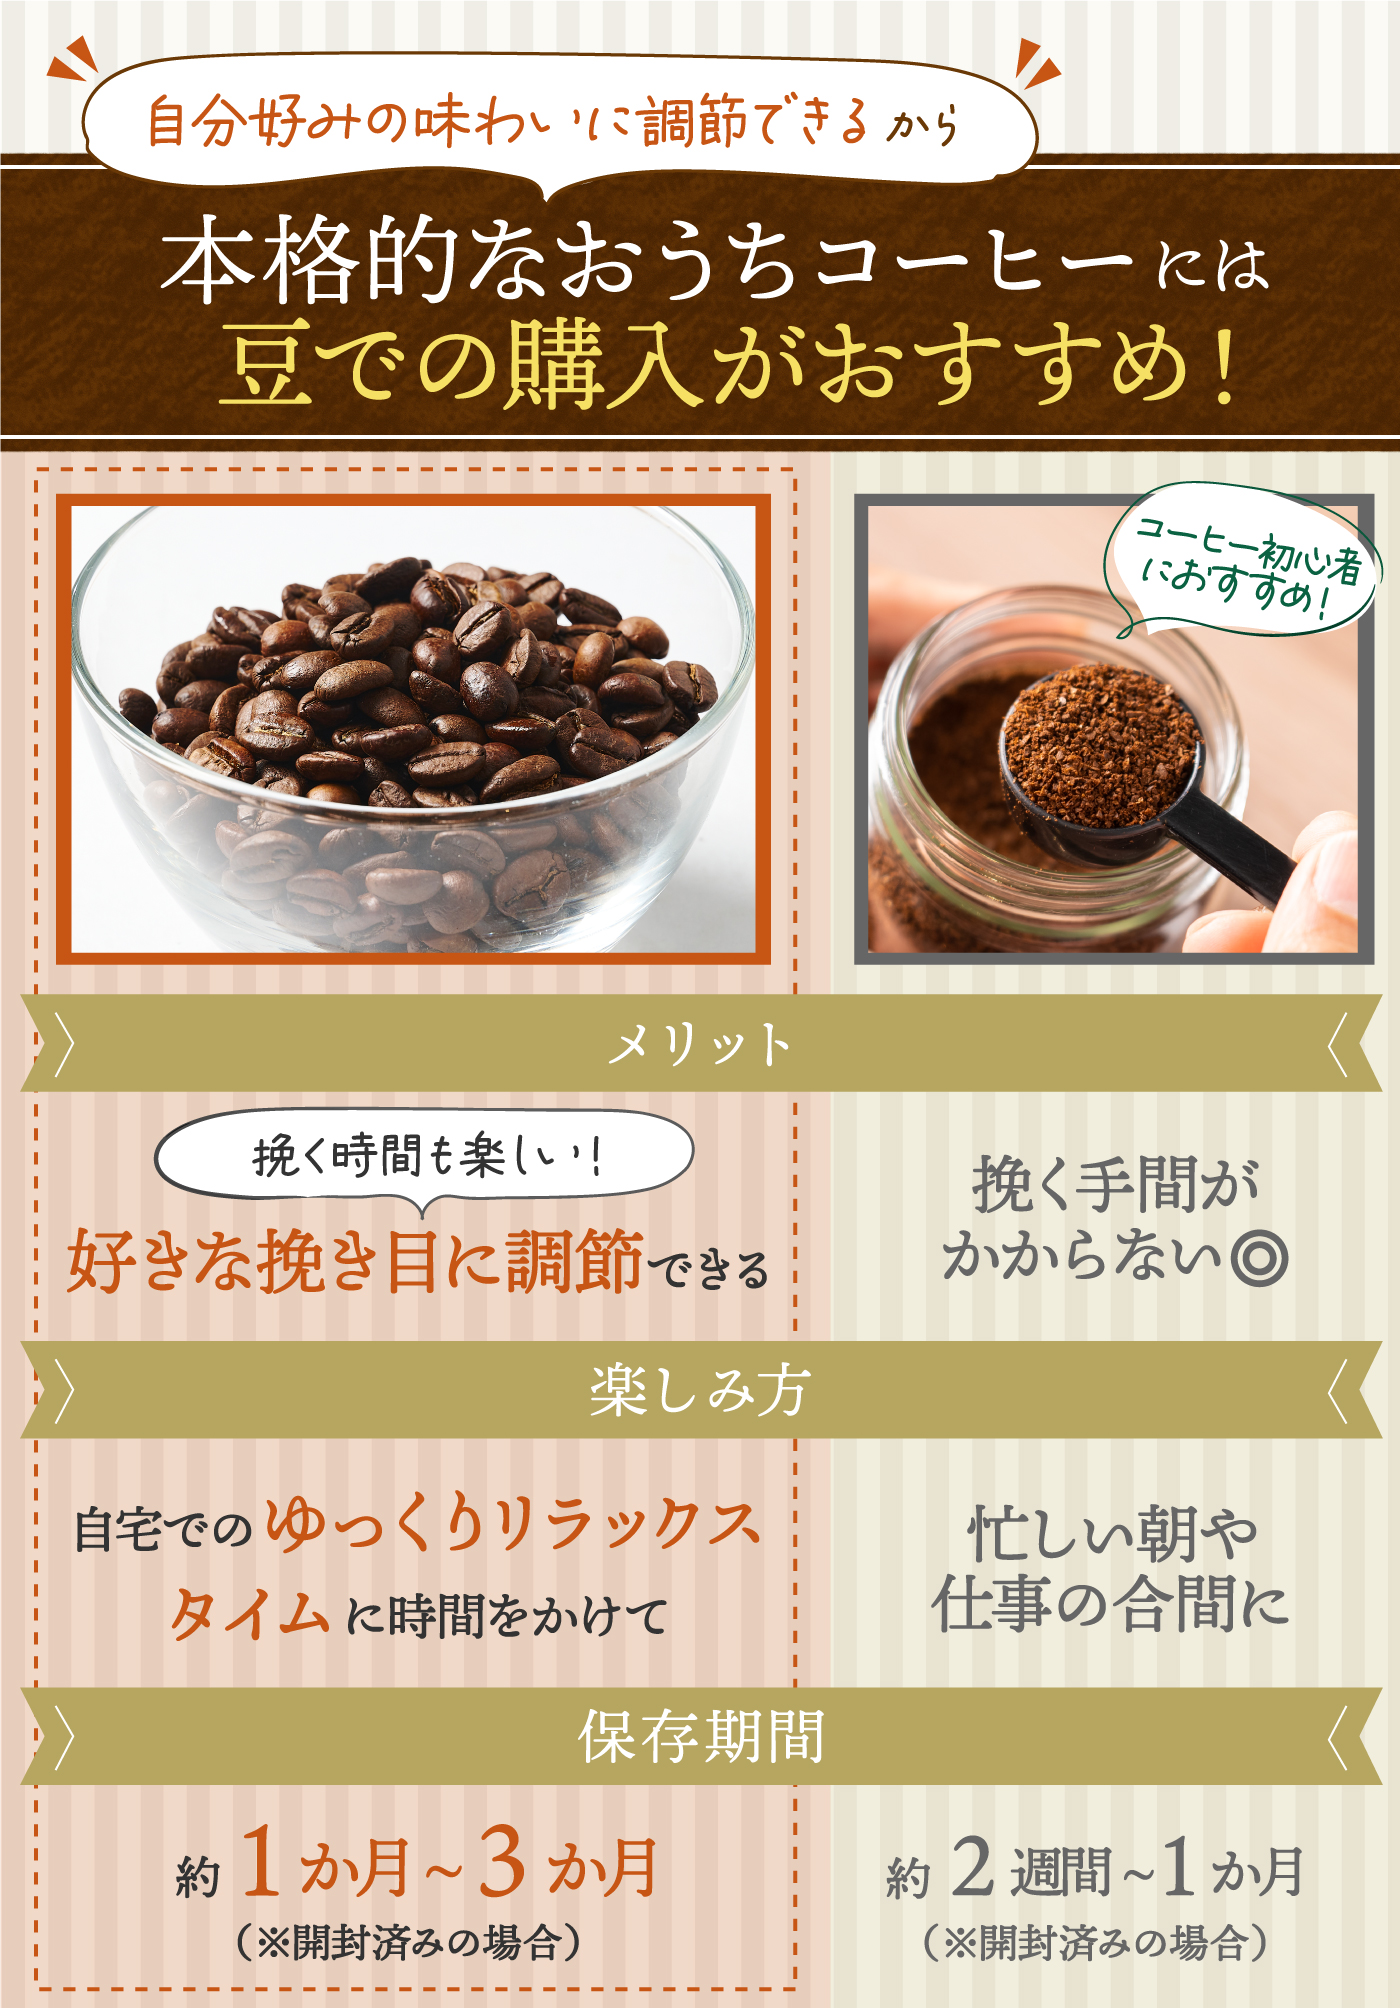 アイス濃厚ショコラ 深い香りと豊かな口当たり こだわり焙煎 コーヒー豆 贅沢 通販